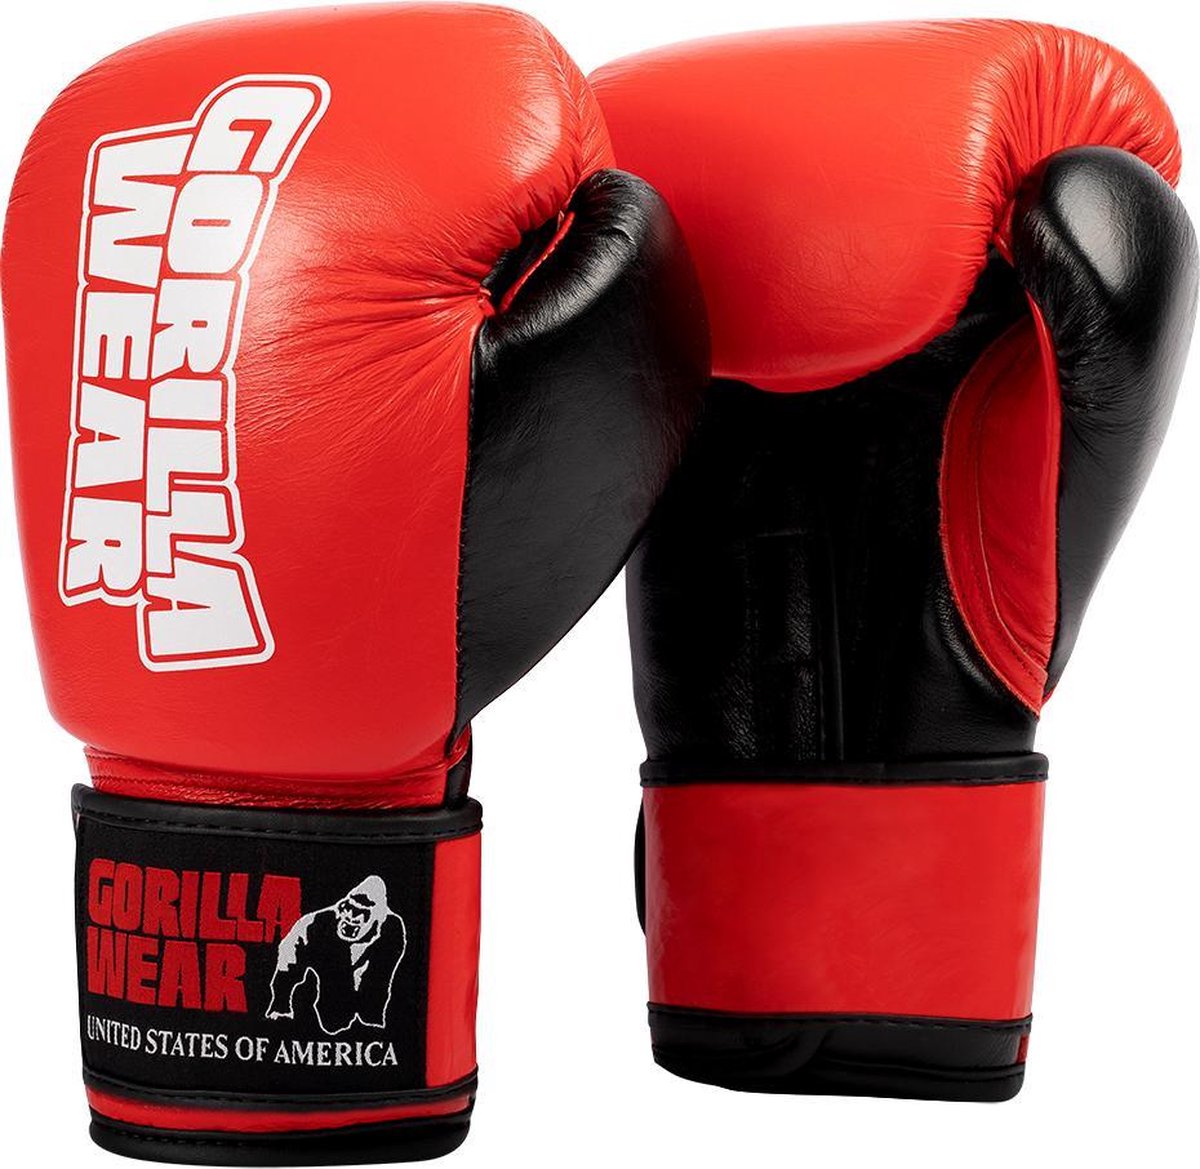 Gorilla Wear Ashton Pro Bokshandschoenen - Boxing Gloves - Boksen - Rood/Zwart - 18 oz
